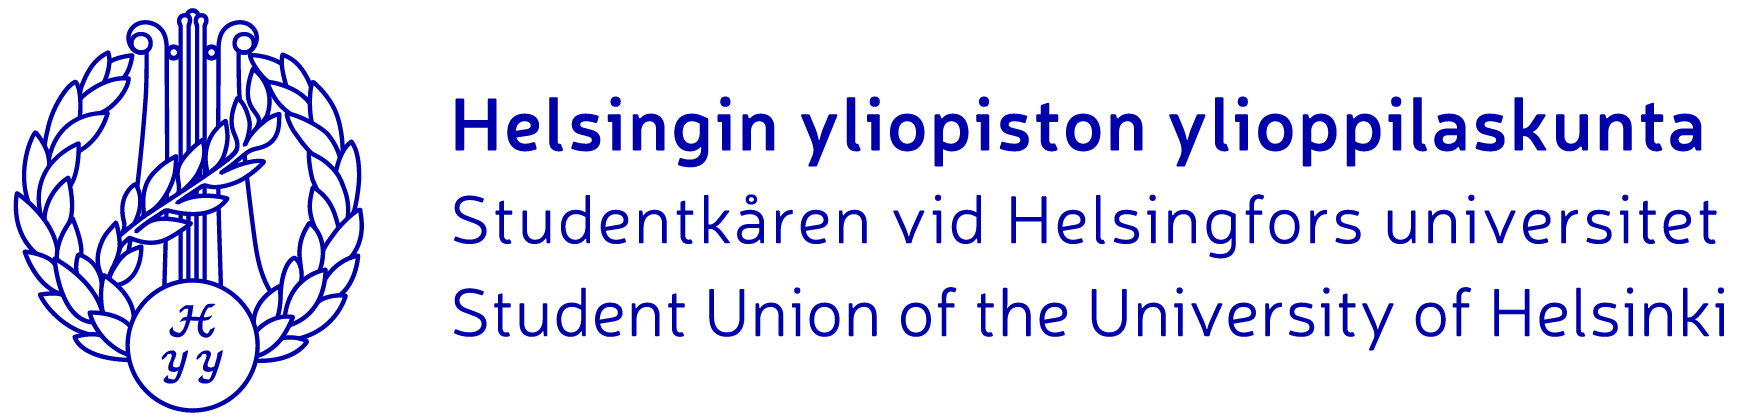 1 HYYn strategia 2016 2020 2 Strategian tarkoitus ja käyttö 3 4 5 Strategia on ylin Helsingin yliopiston ylioppilaskunnan (HYY) toimintaa ohjaava asiakirja.